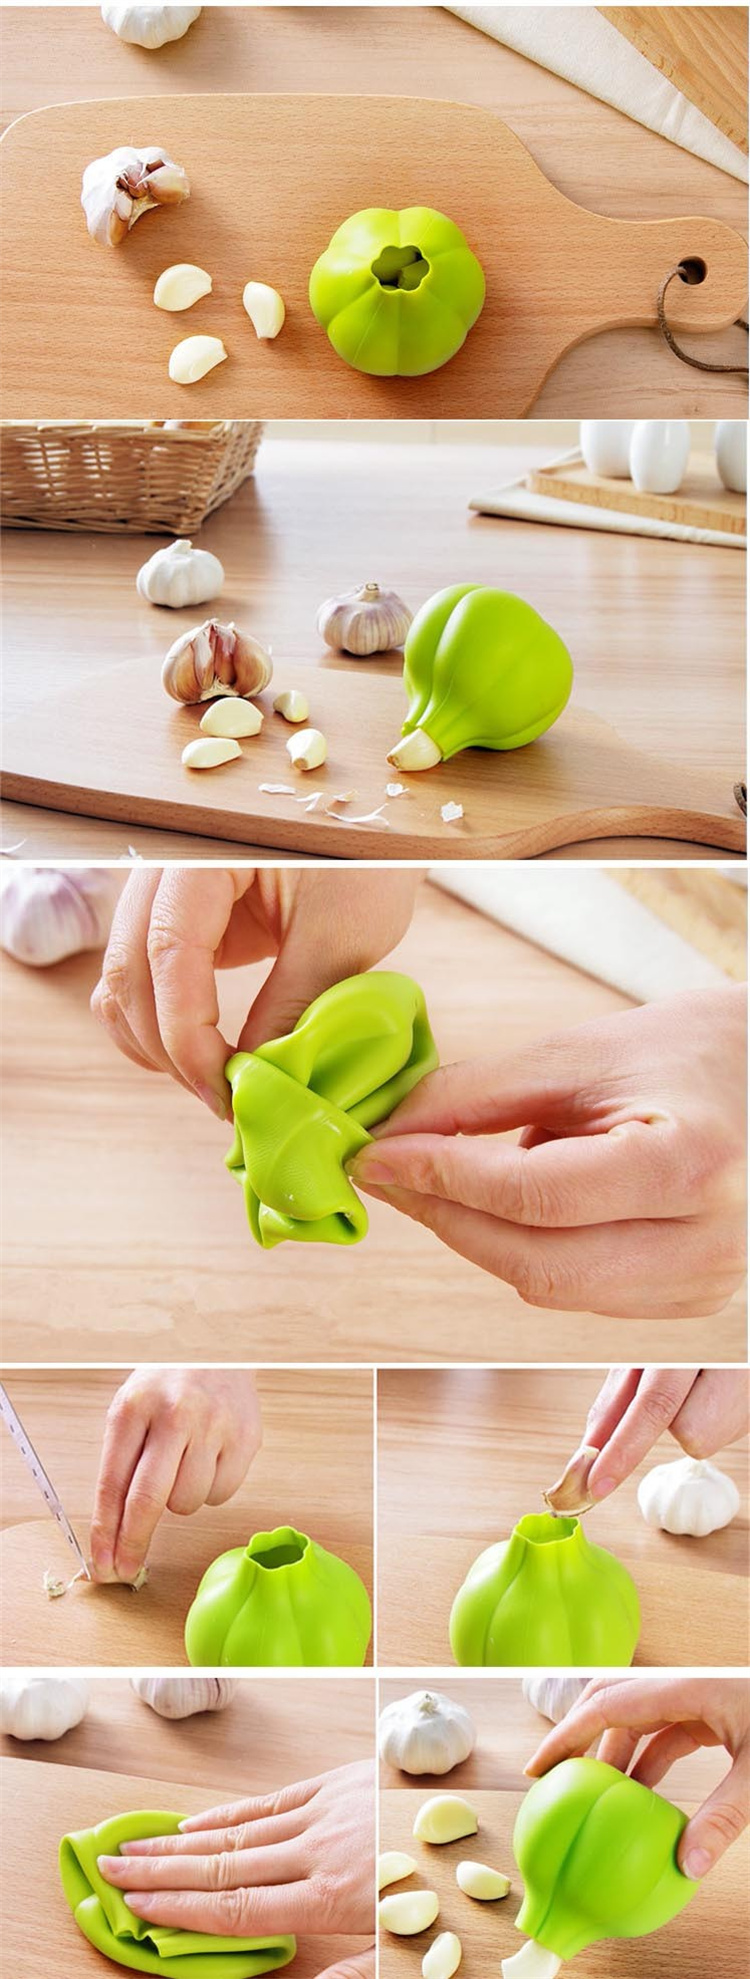 Hand free silicone peel garlic artifact